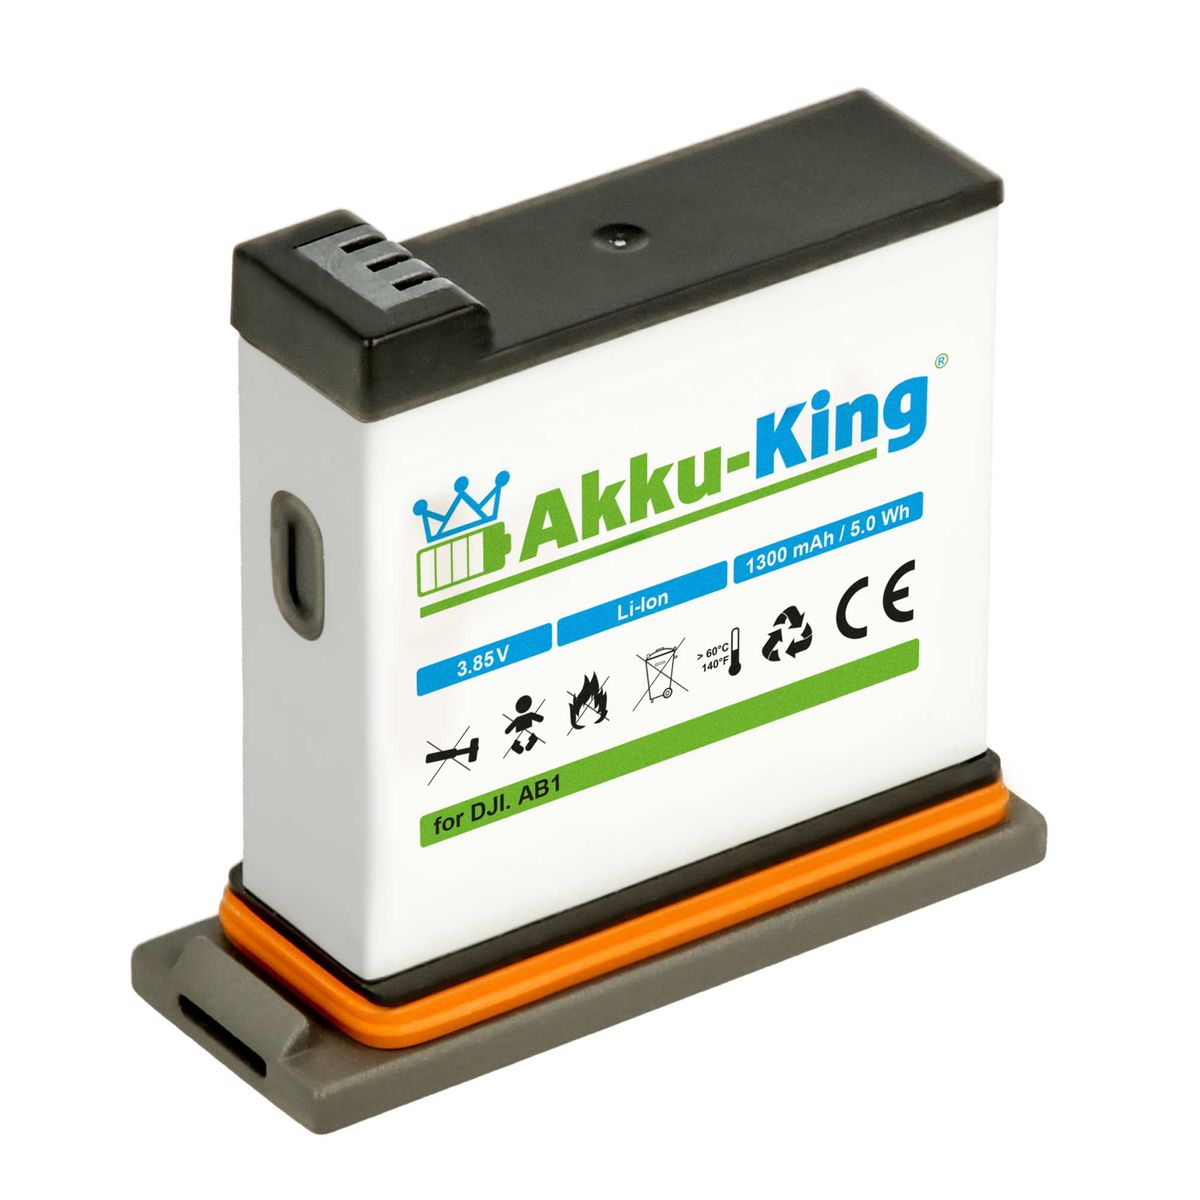 kompatibel Akku 1300mAh mit 3.85 Volt, Kamera-Akku, AKKU-KING DJI AB1 P01 Li-Ion